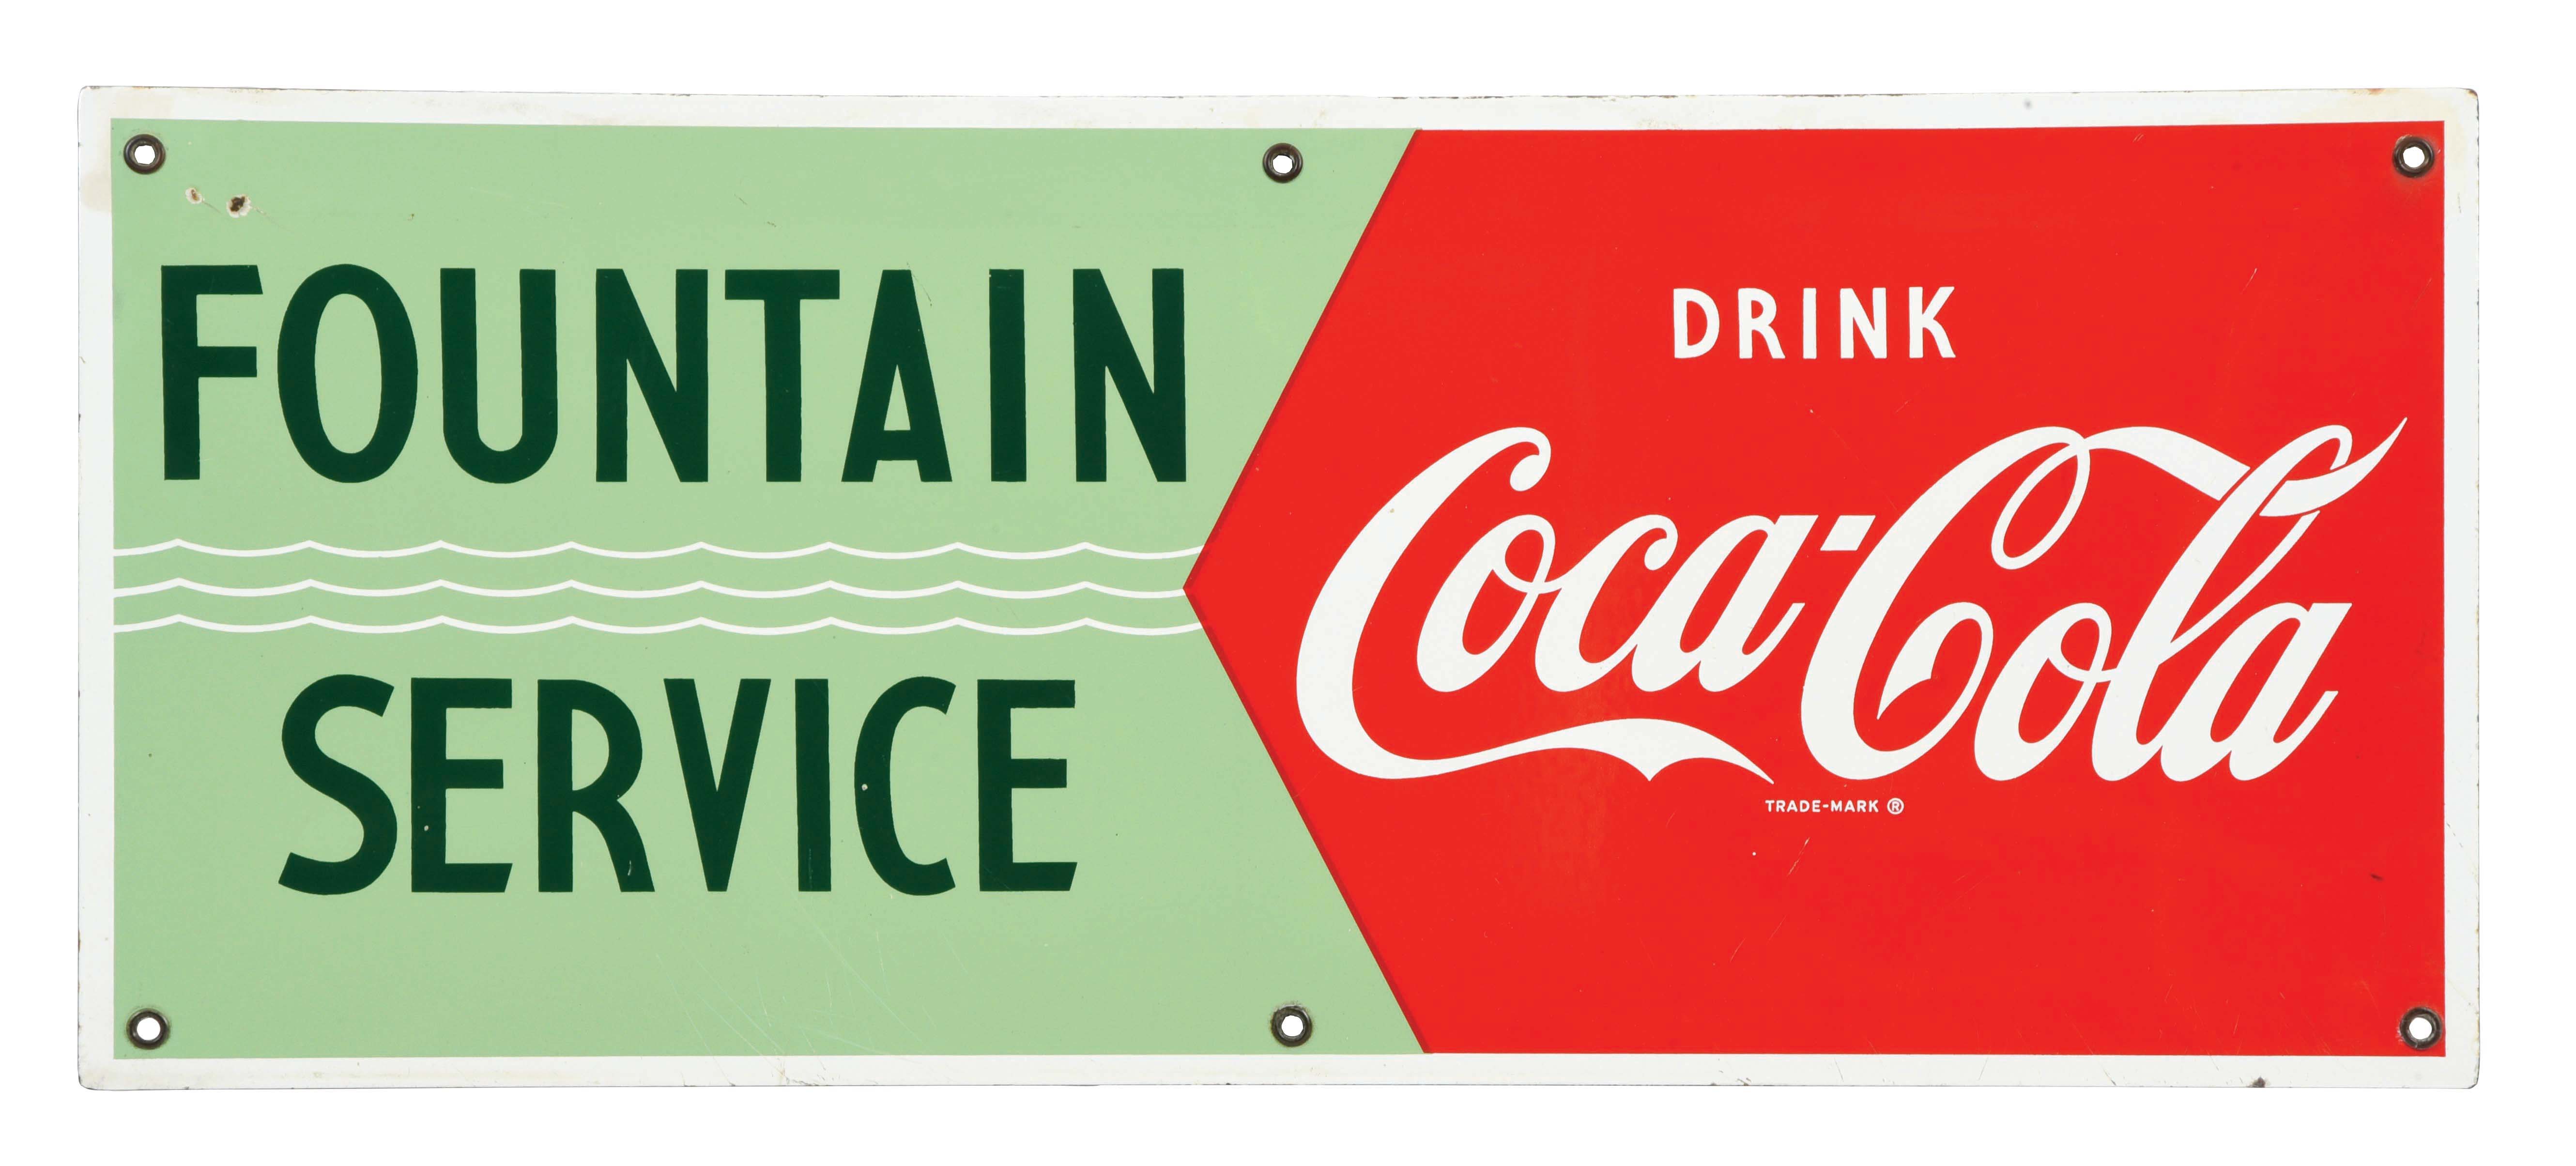 FOUNTAIN Coca Cola SERVICE 凸凹ブリキ看板 通販